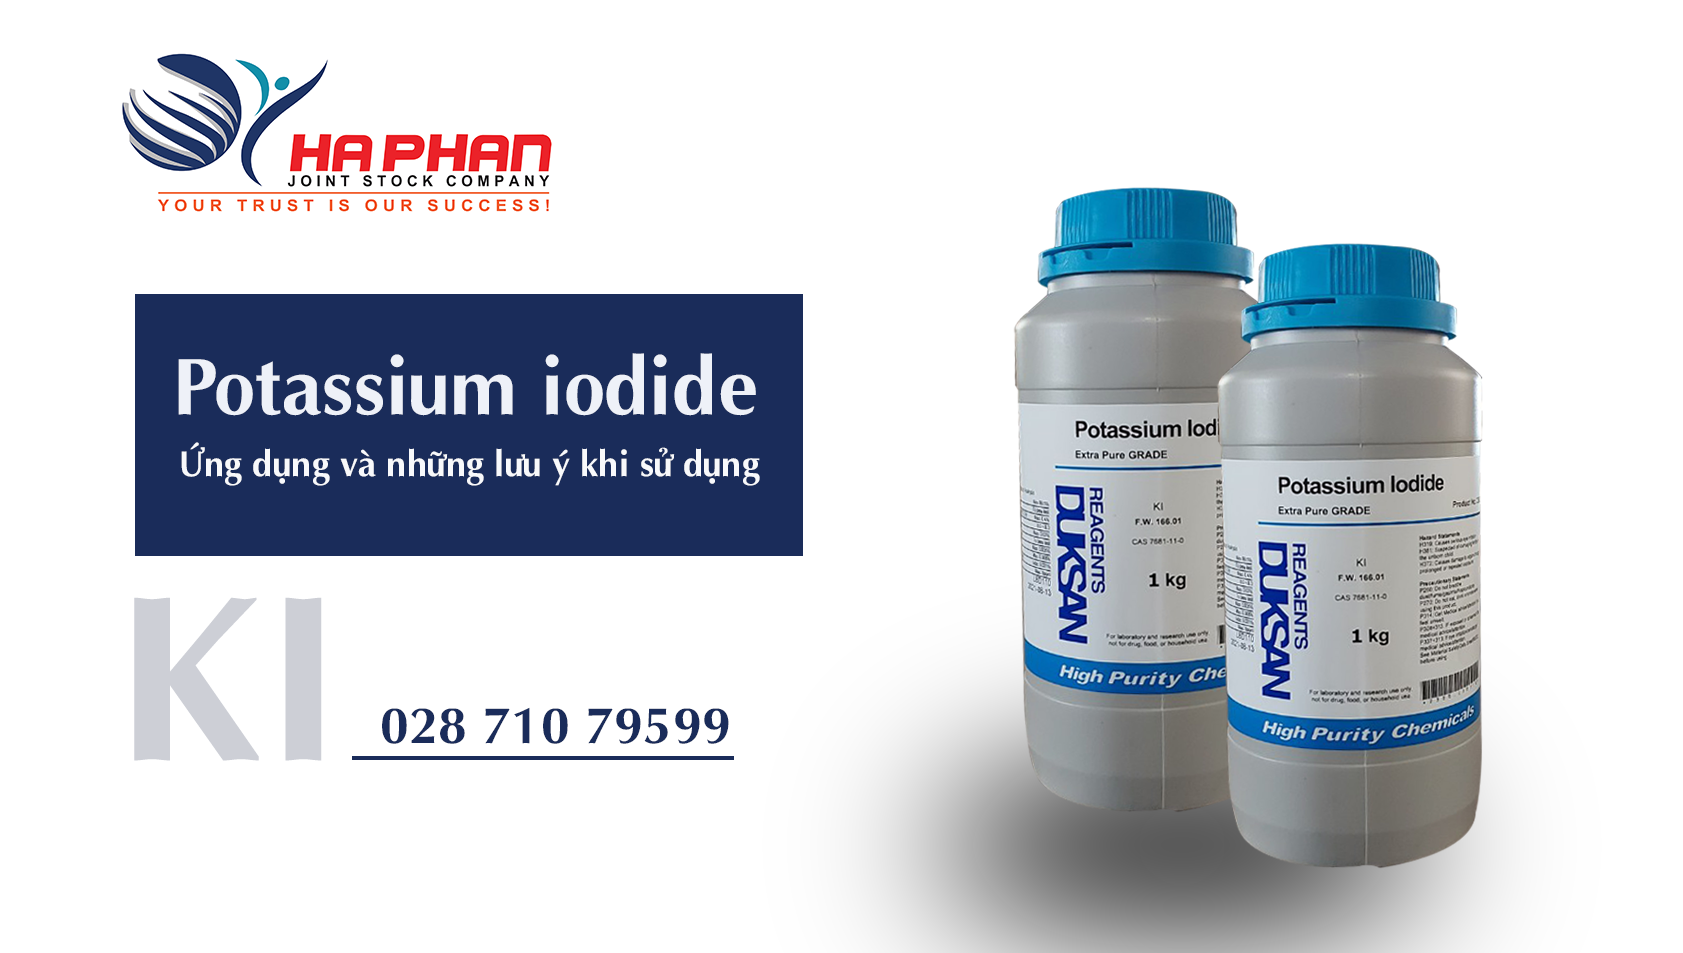 Potassium iodide - Ứng dụng và những lưu ý khi sử dụng